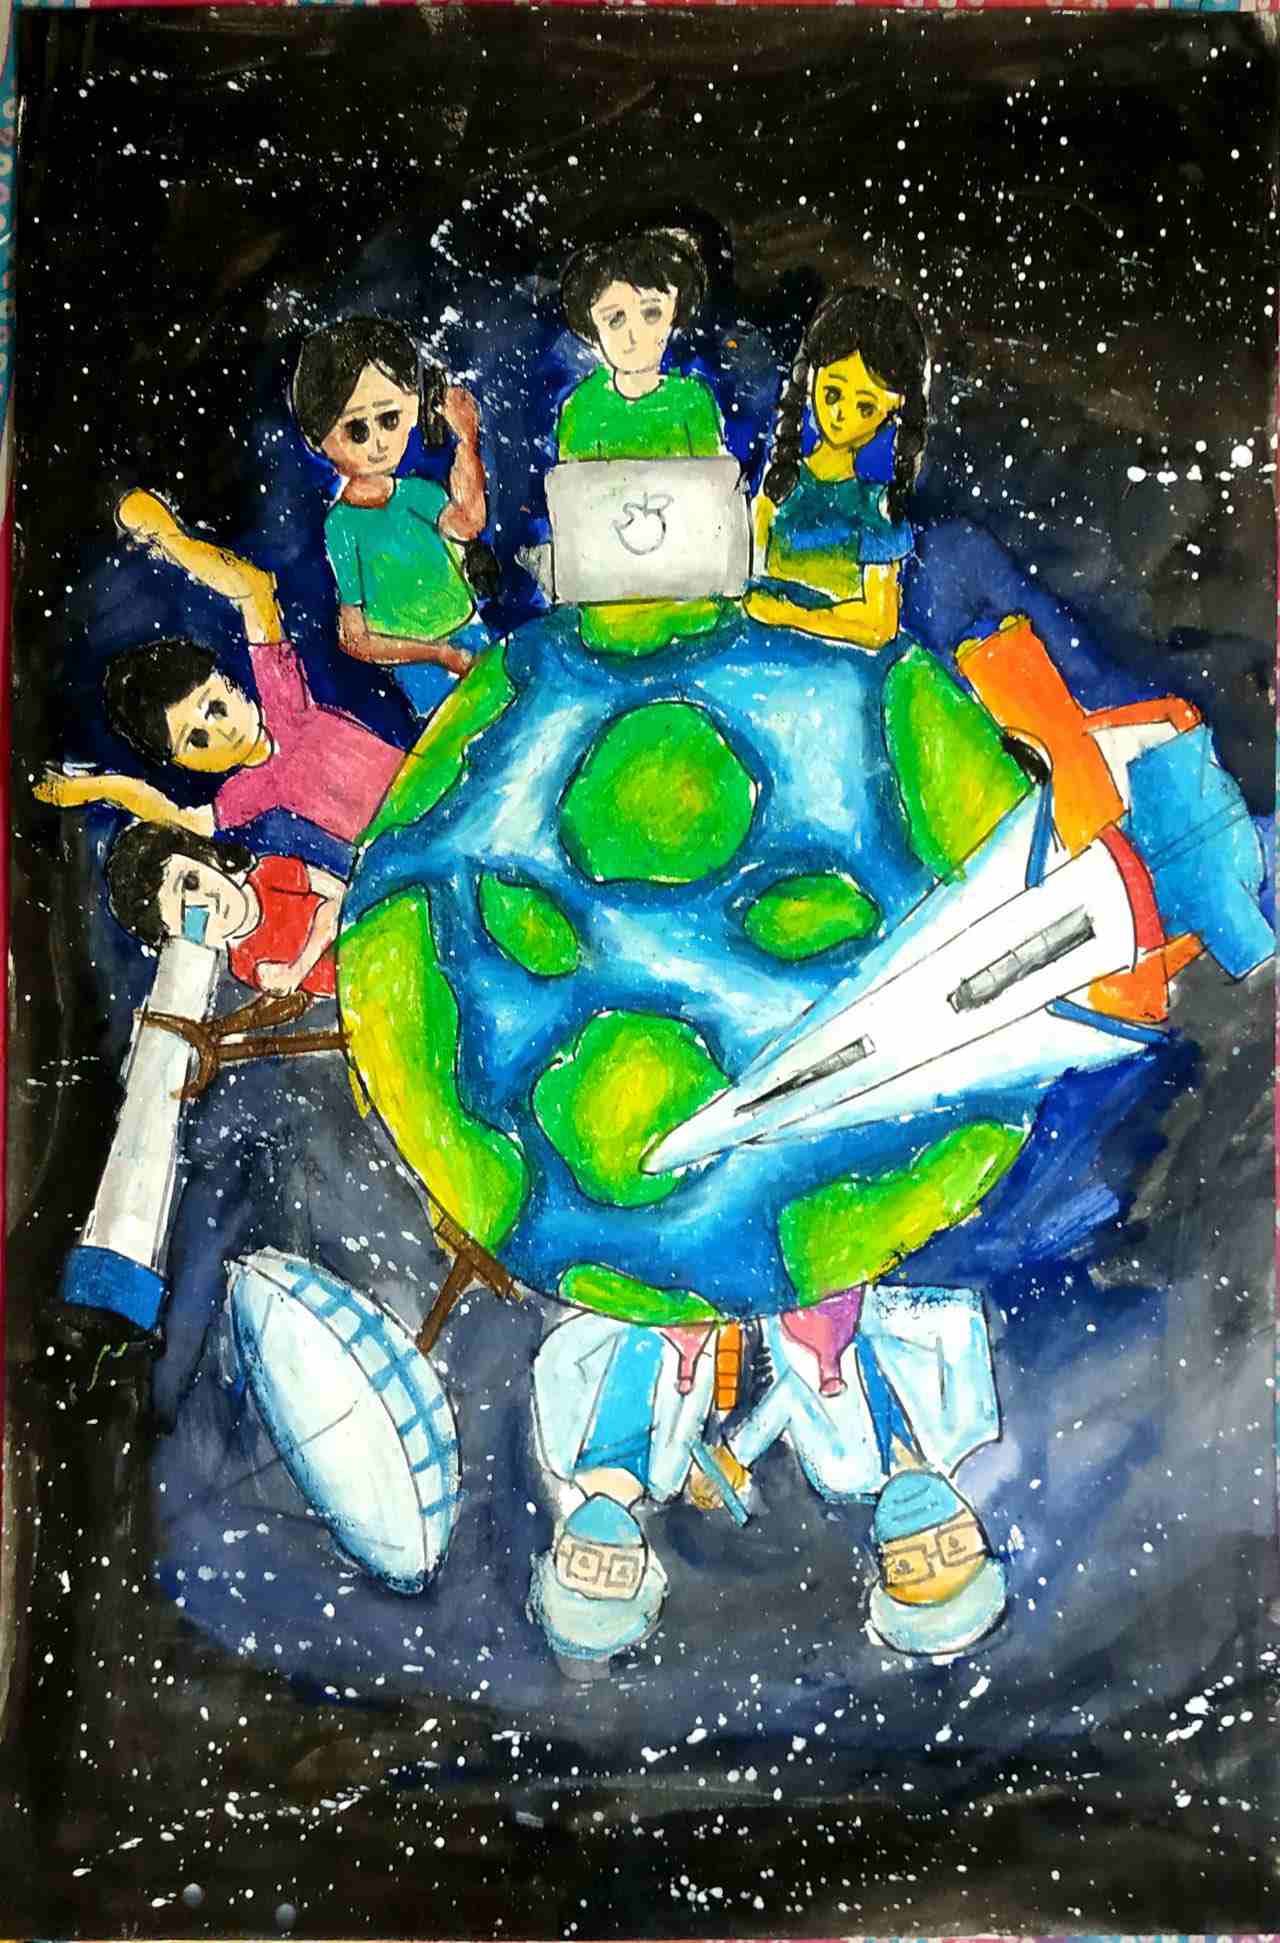 航天日绘画作品《探索无限》,孟加拉国Musharrat Islam Ridima